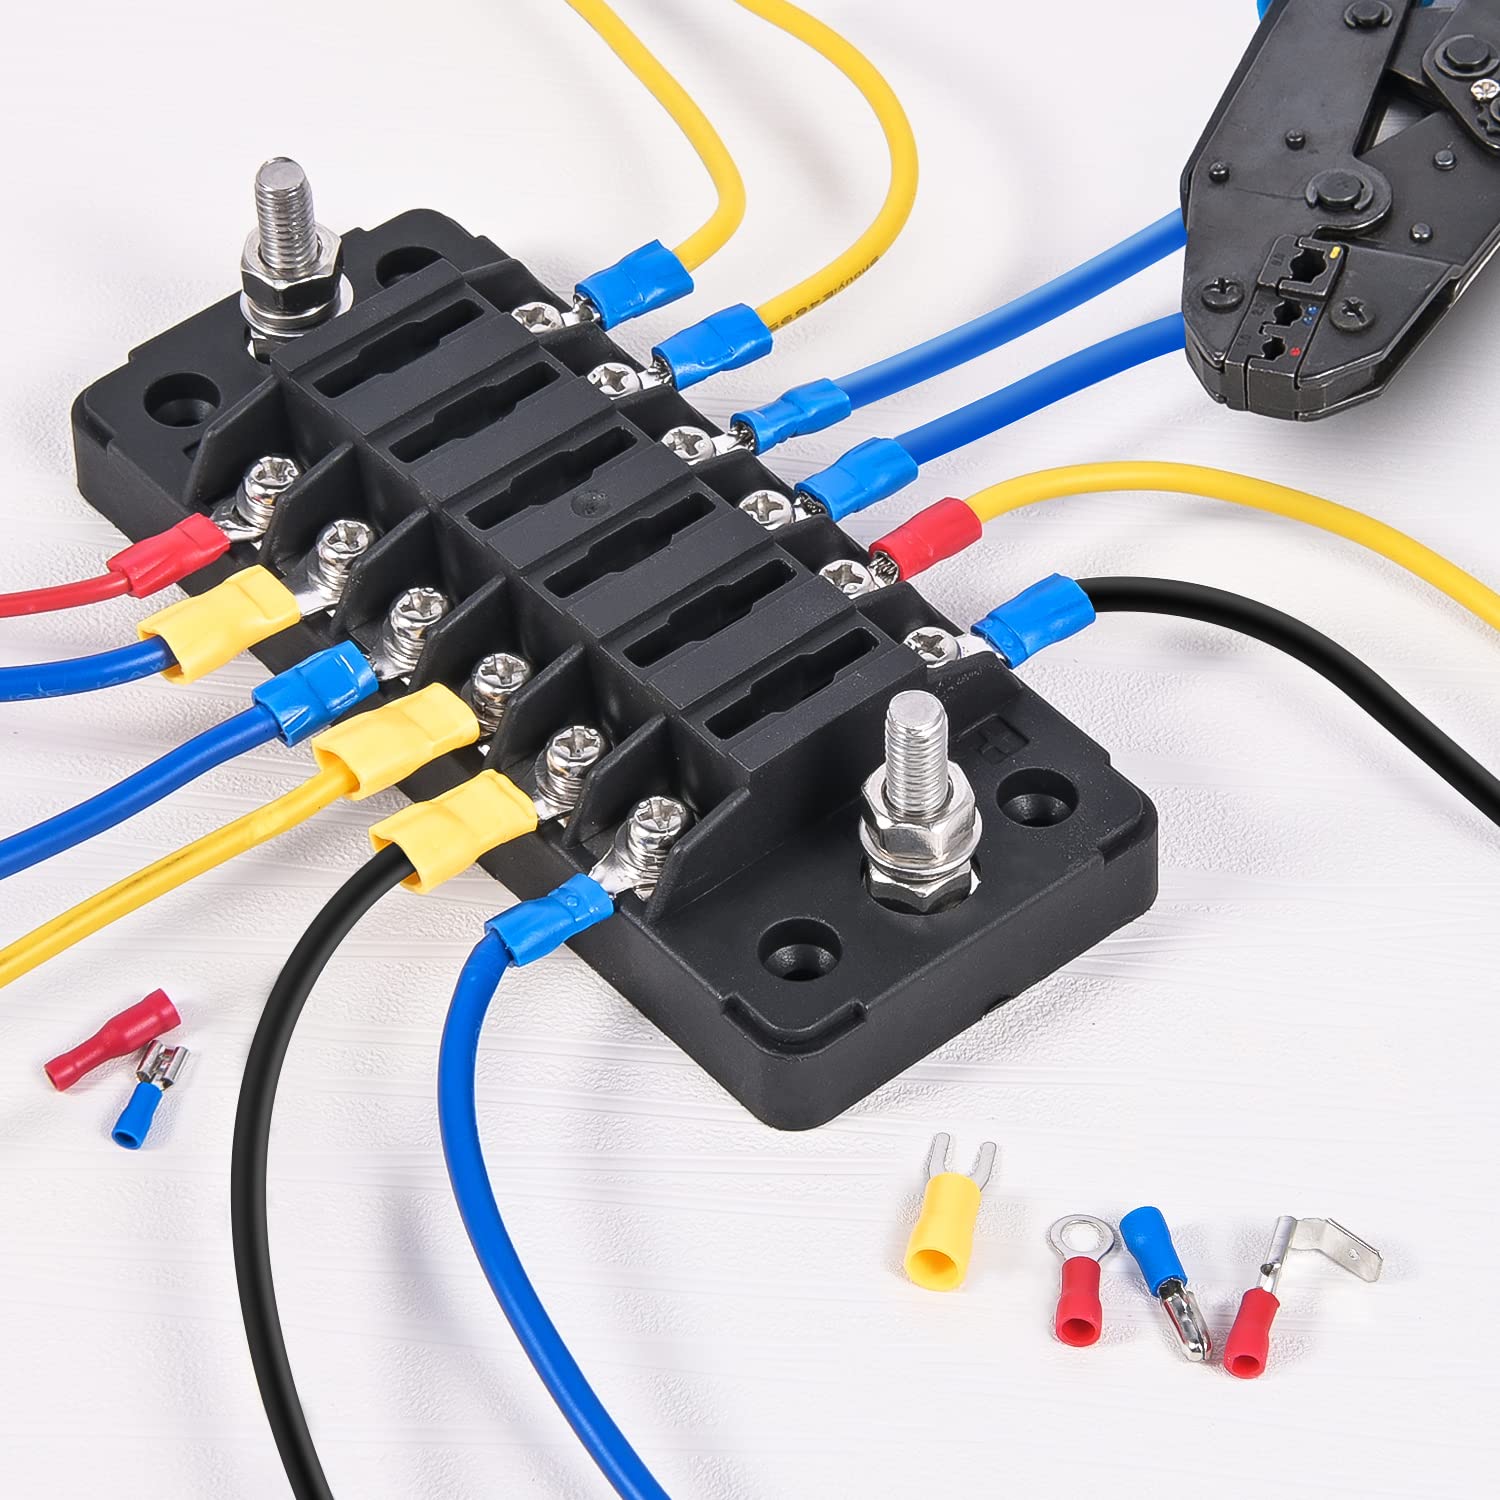 1500Pcs Electrical wire terminal crimp connectors Nilight